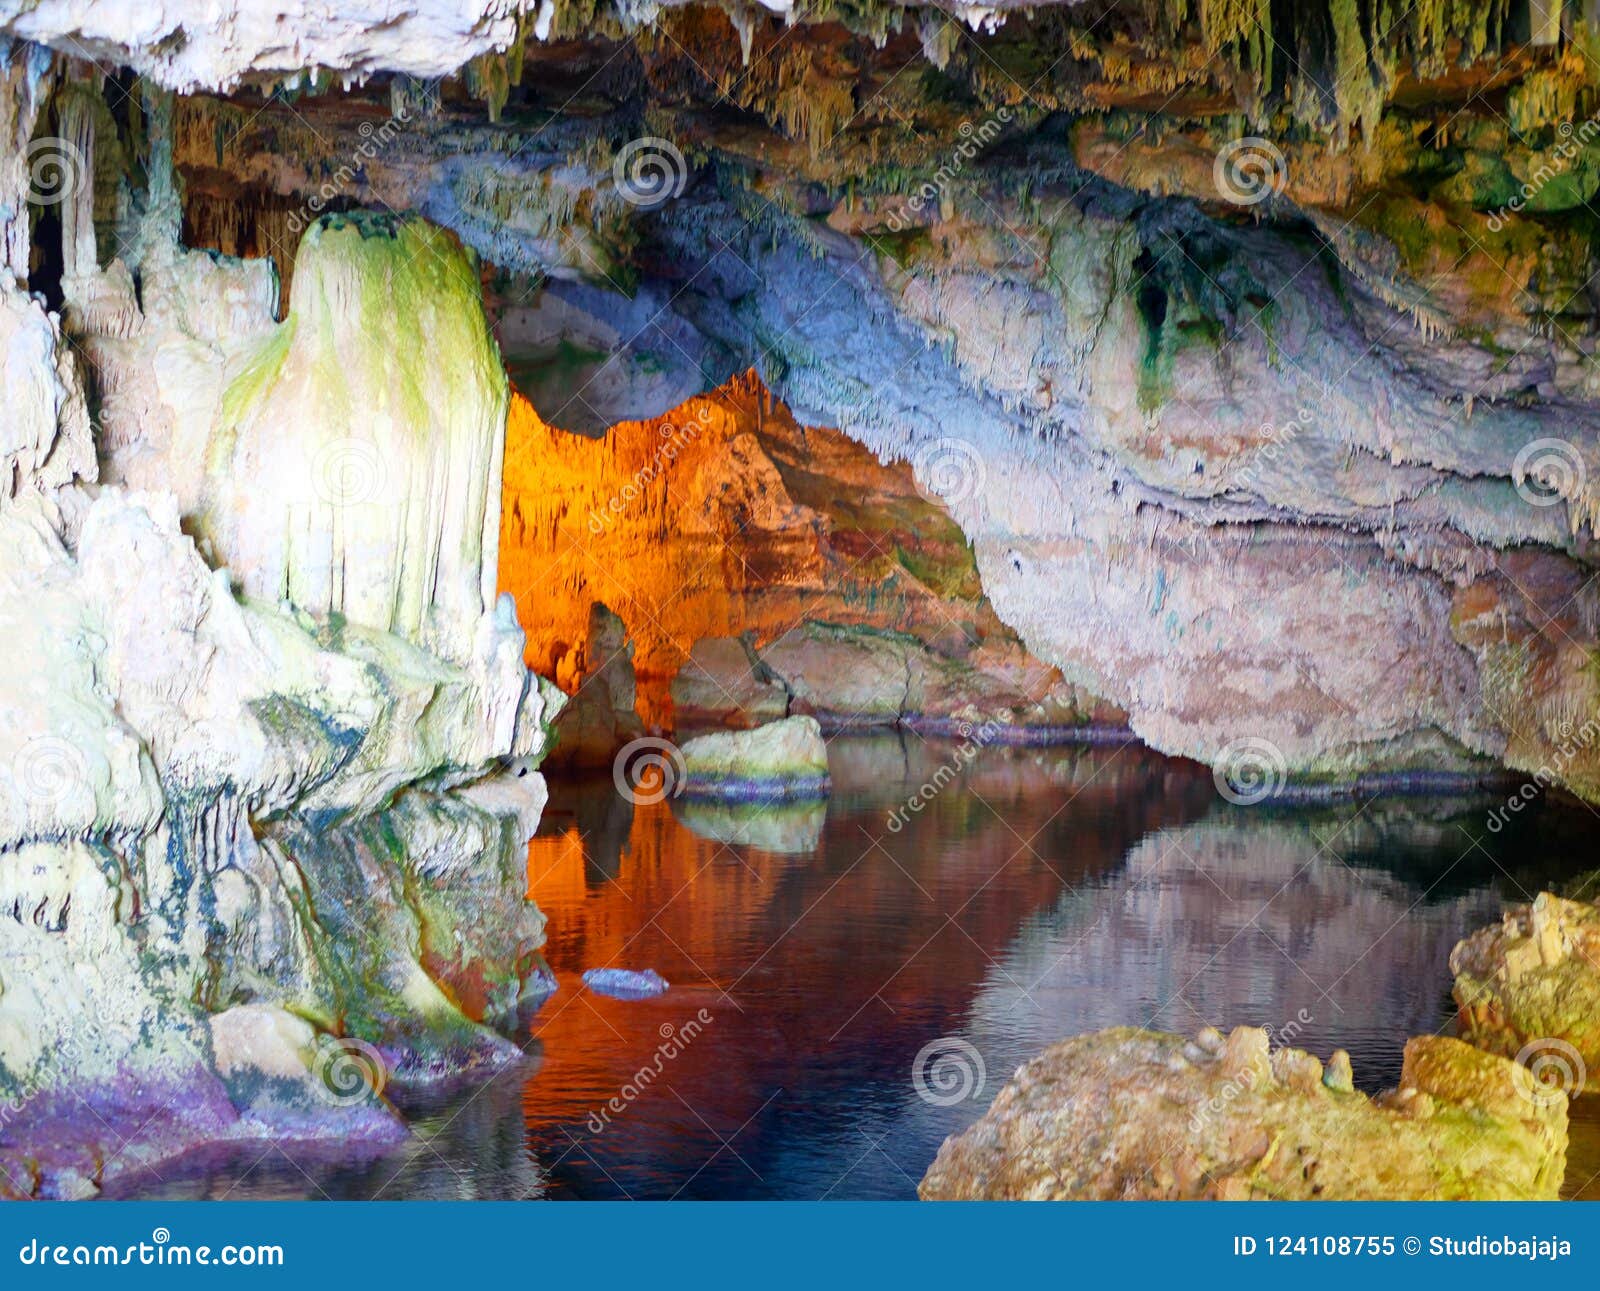 neptune`s grotto grotta di nettuno, capo caccia, alghero, sardinia, italy.